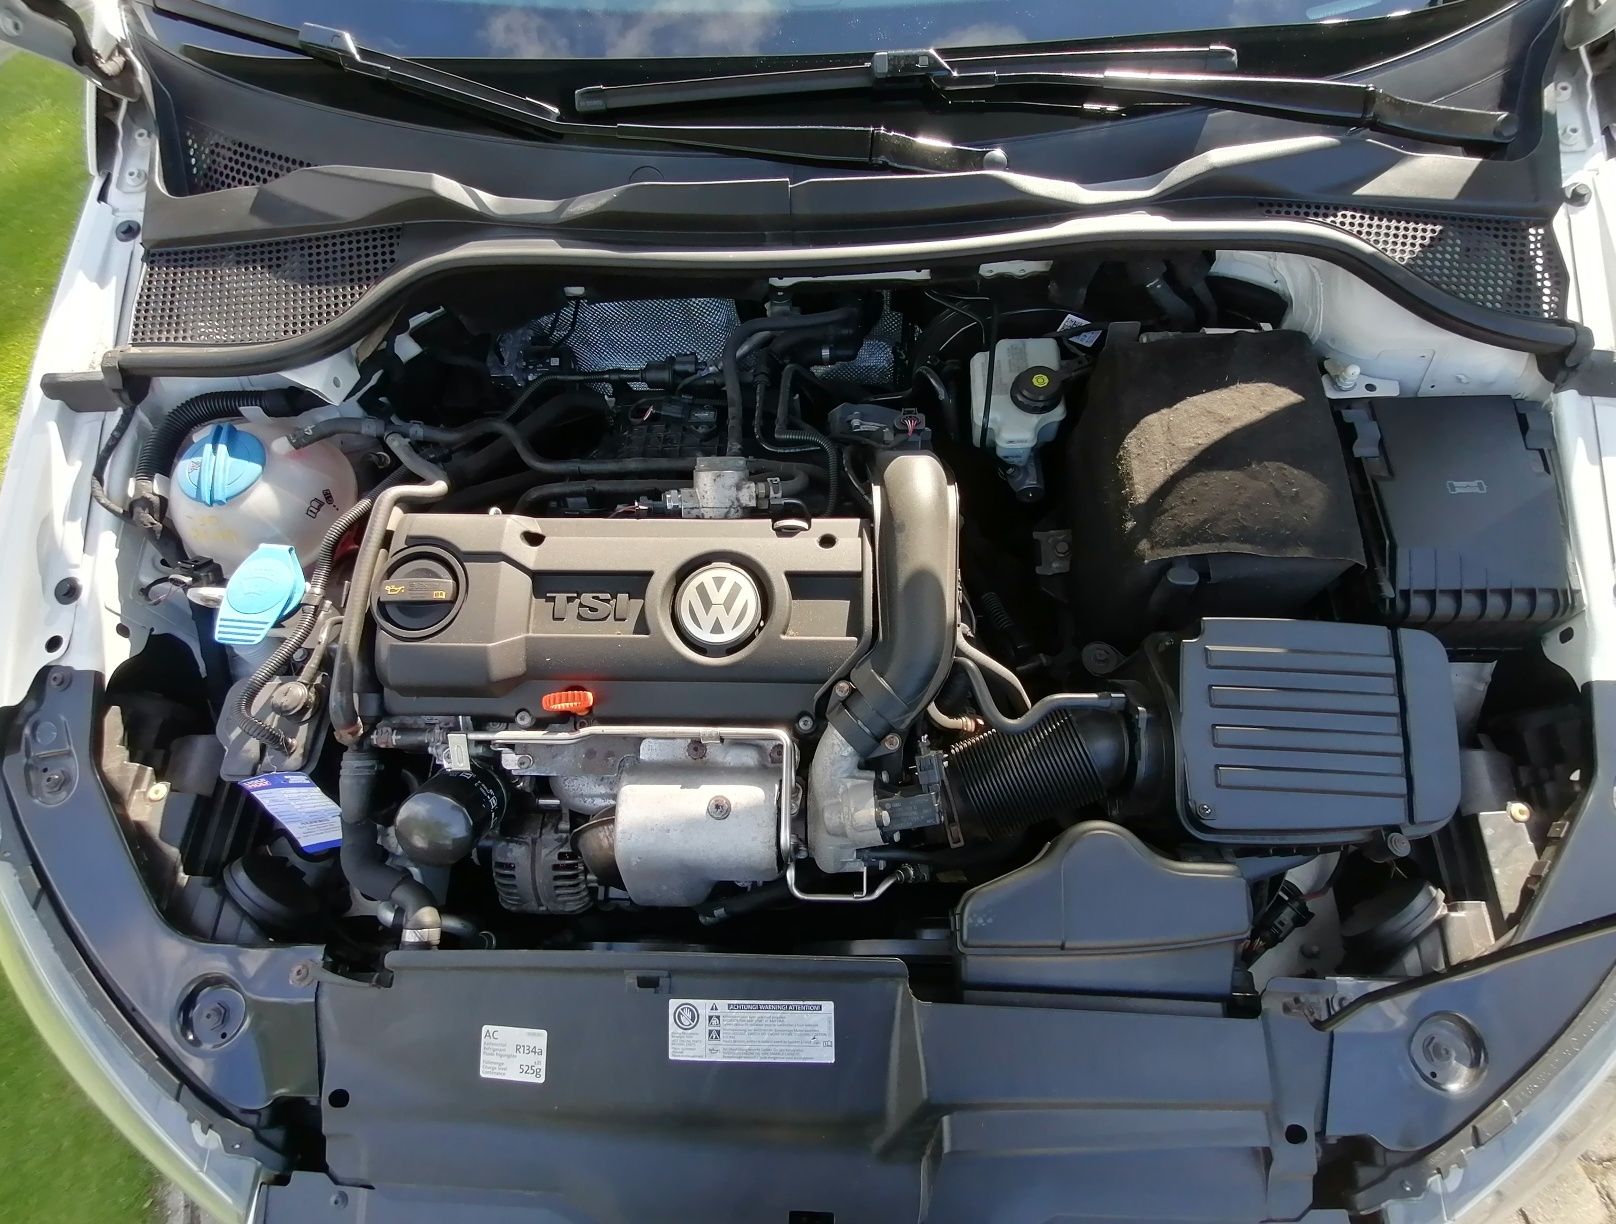 VW  Scirocco  2011 - 1,4 benzyna - Super Stan  B A R D Z O - Ł A D N Y